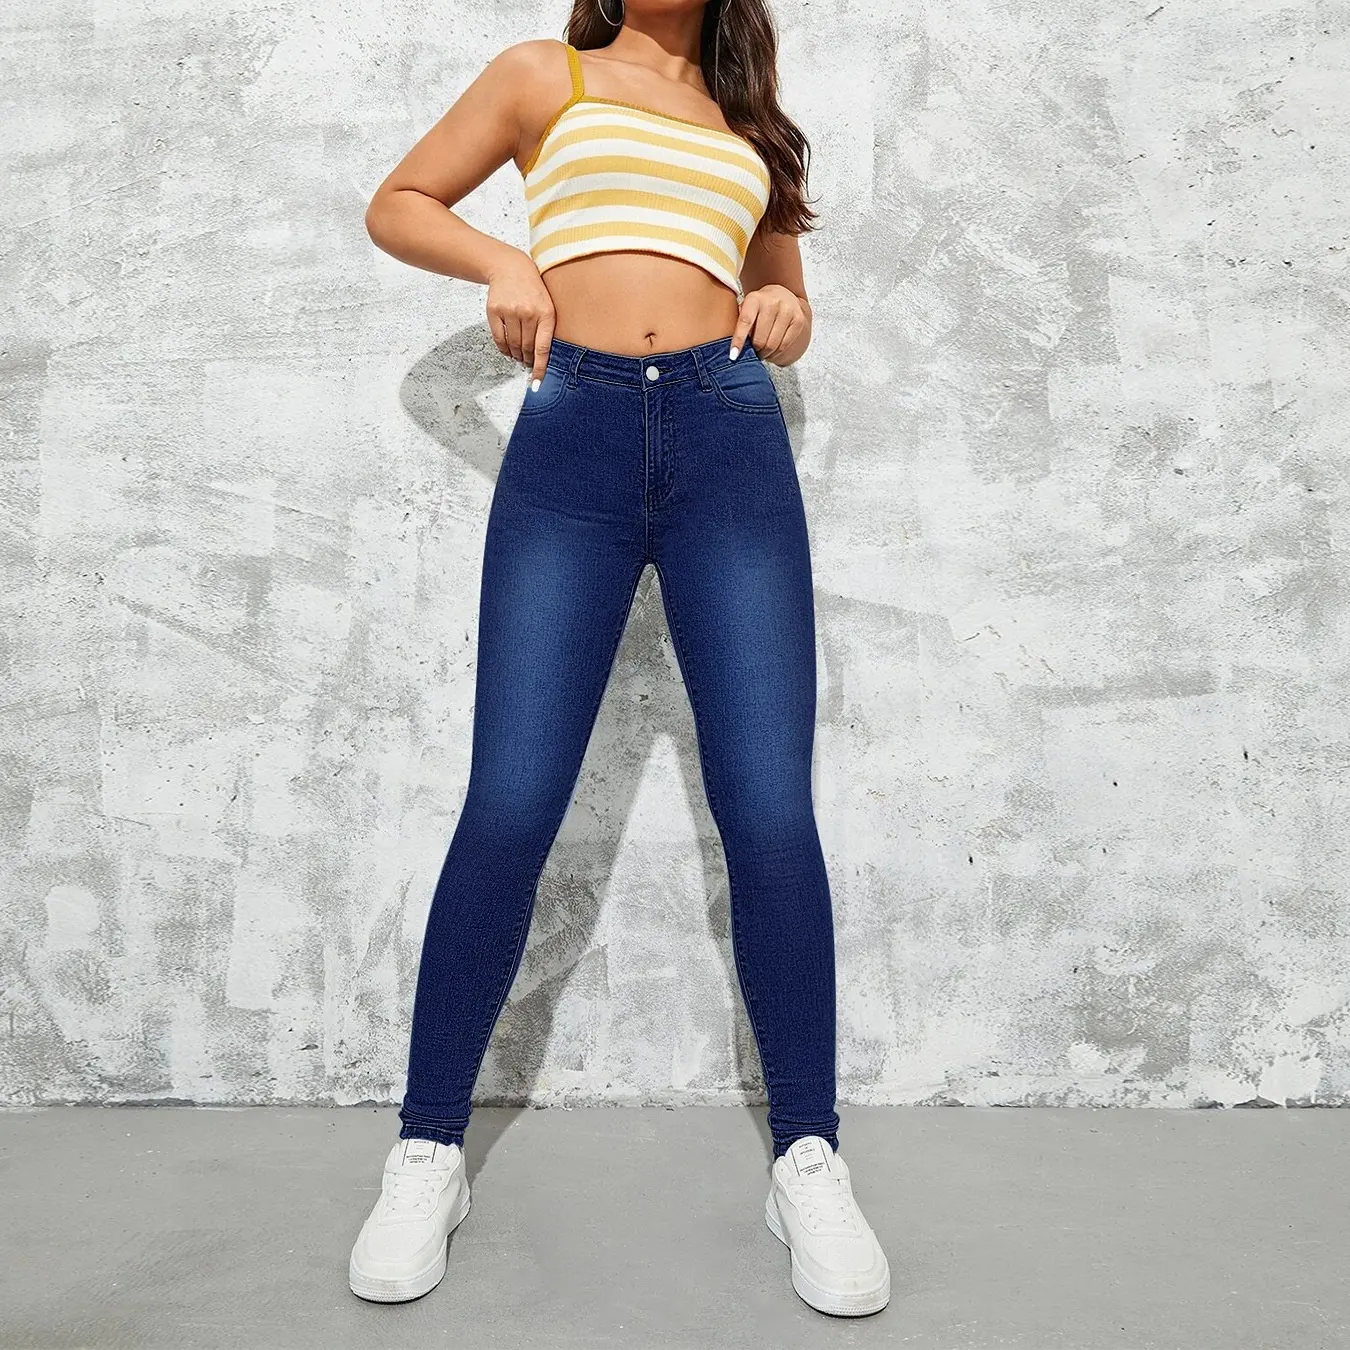 WJ199 benutzer definierte Frauen Denim Röhrenjeans hohe Taille Hüftlift einfarbige Frauen Slim Fit Jeans Damen Jeans